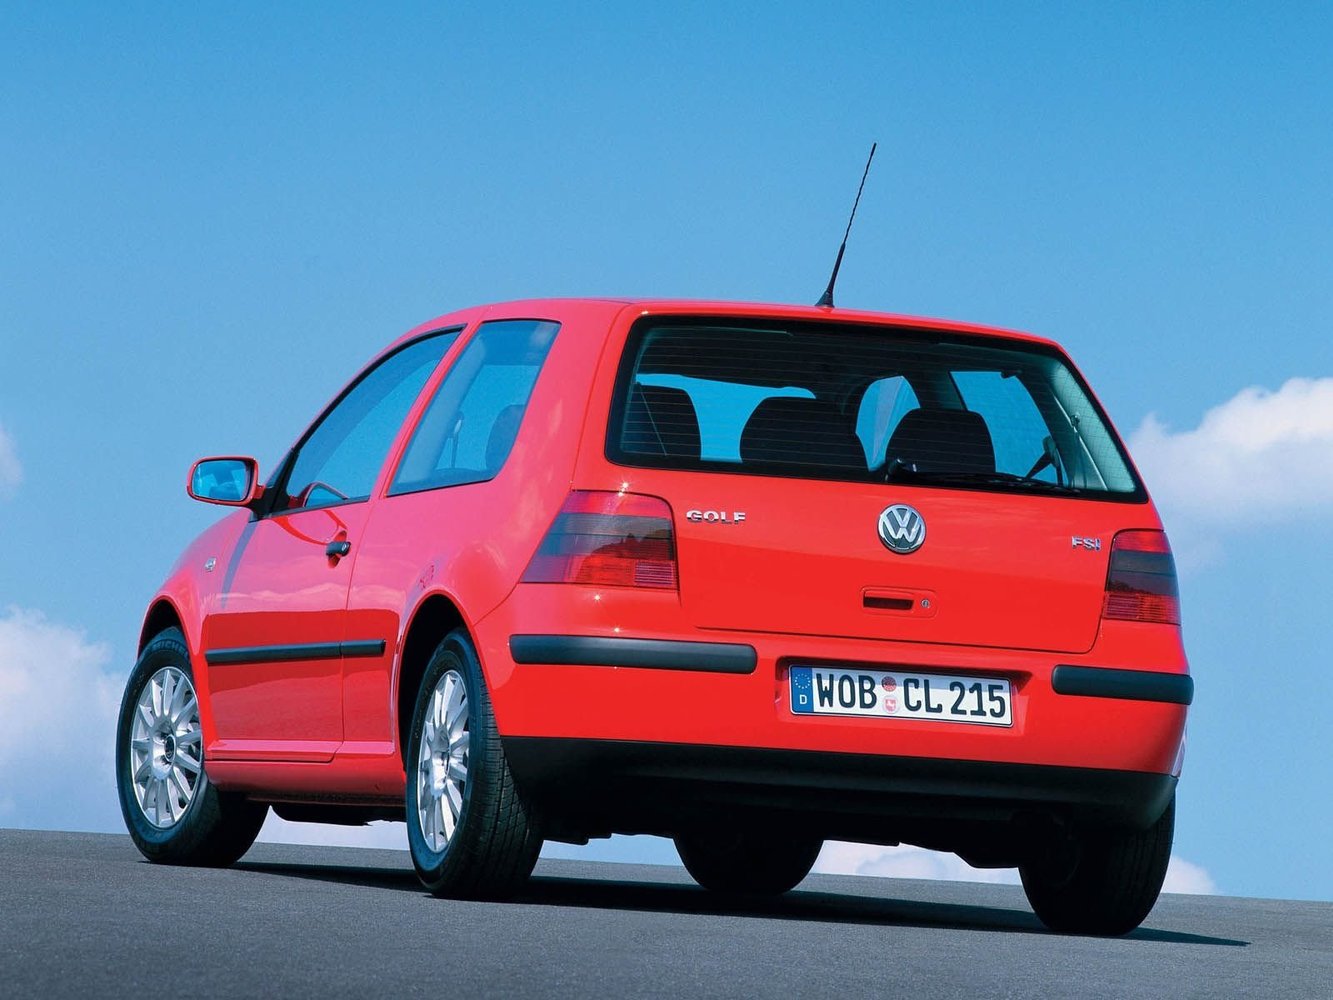 хэтчбек 3 дв. Volkswagen Golf 1997 - 2003г выпуска модификация 1.4 MT (75 л.с.)